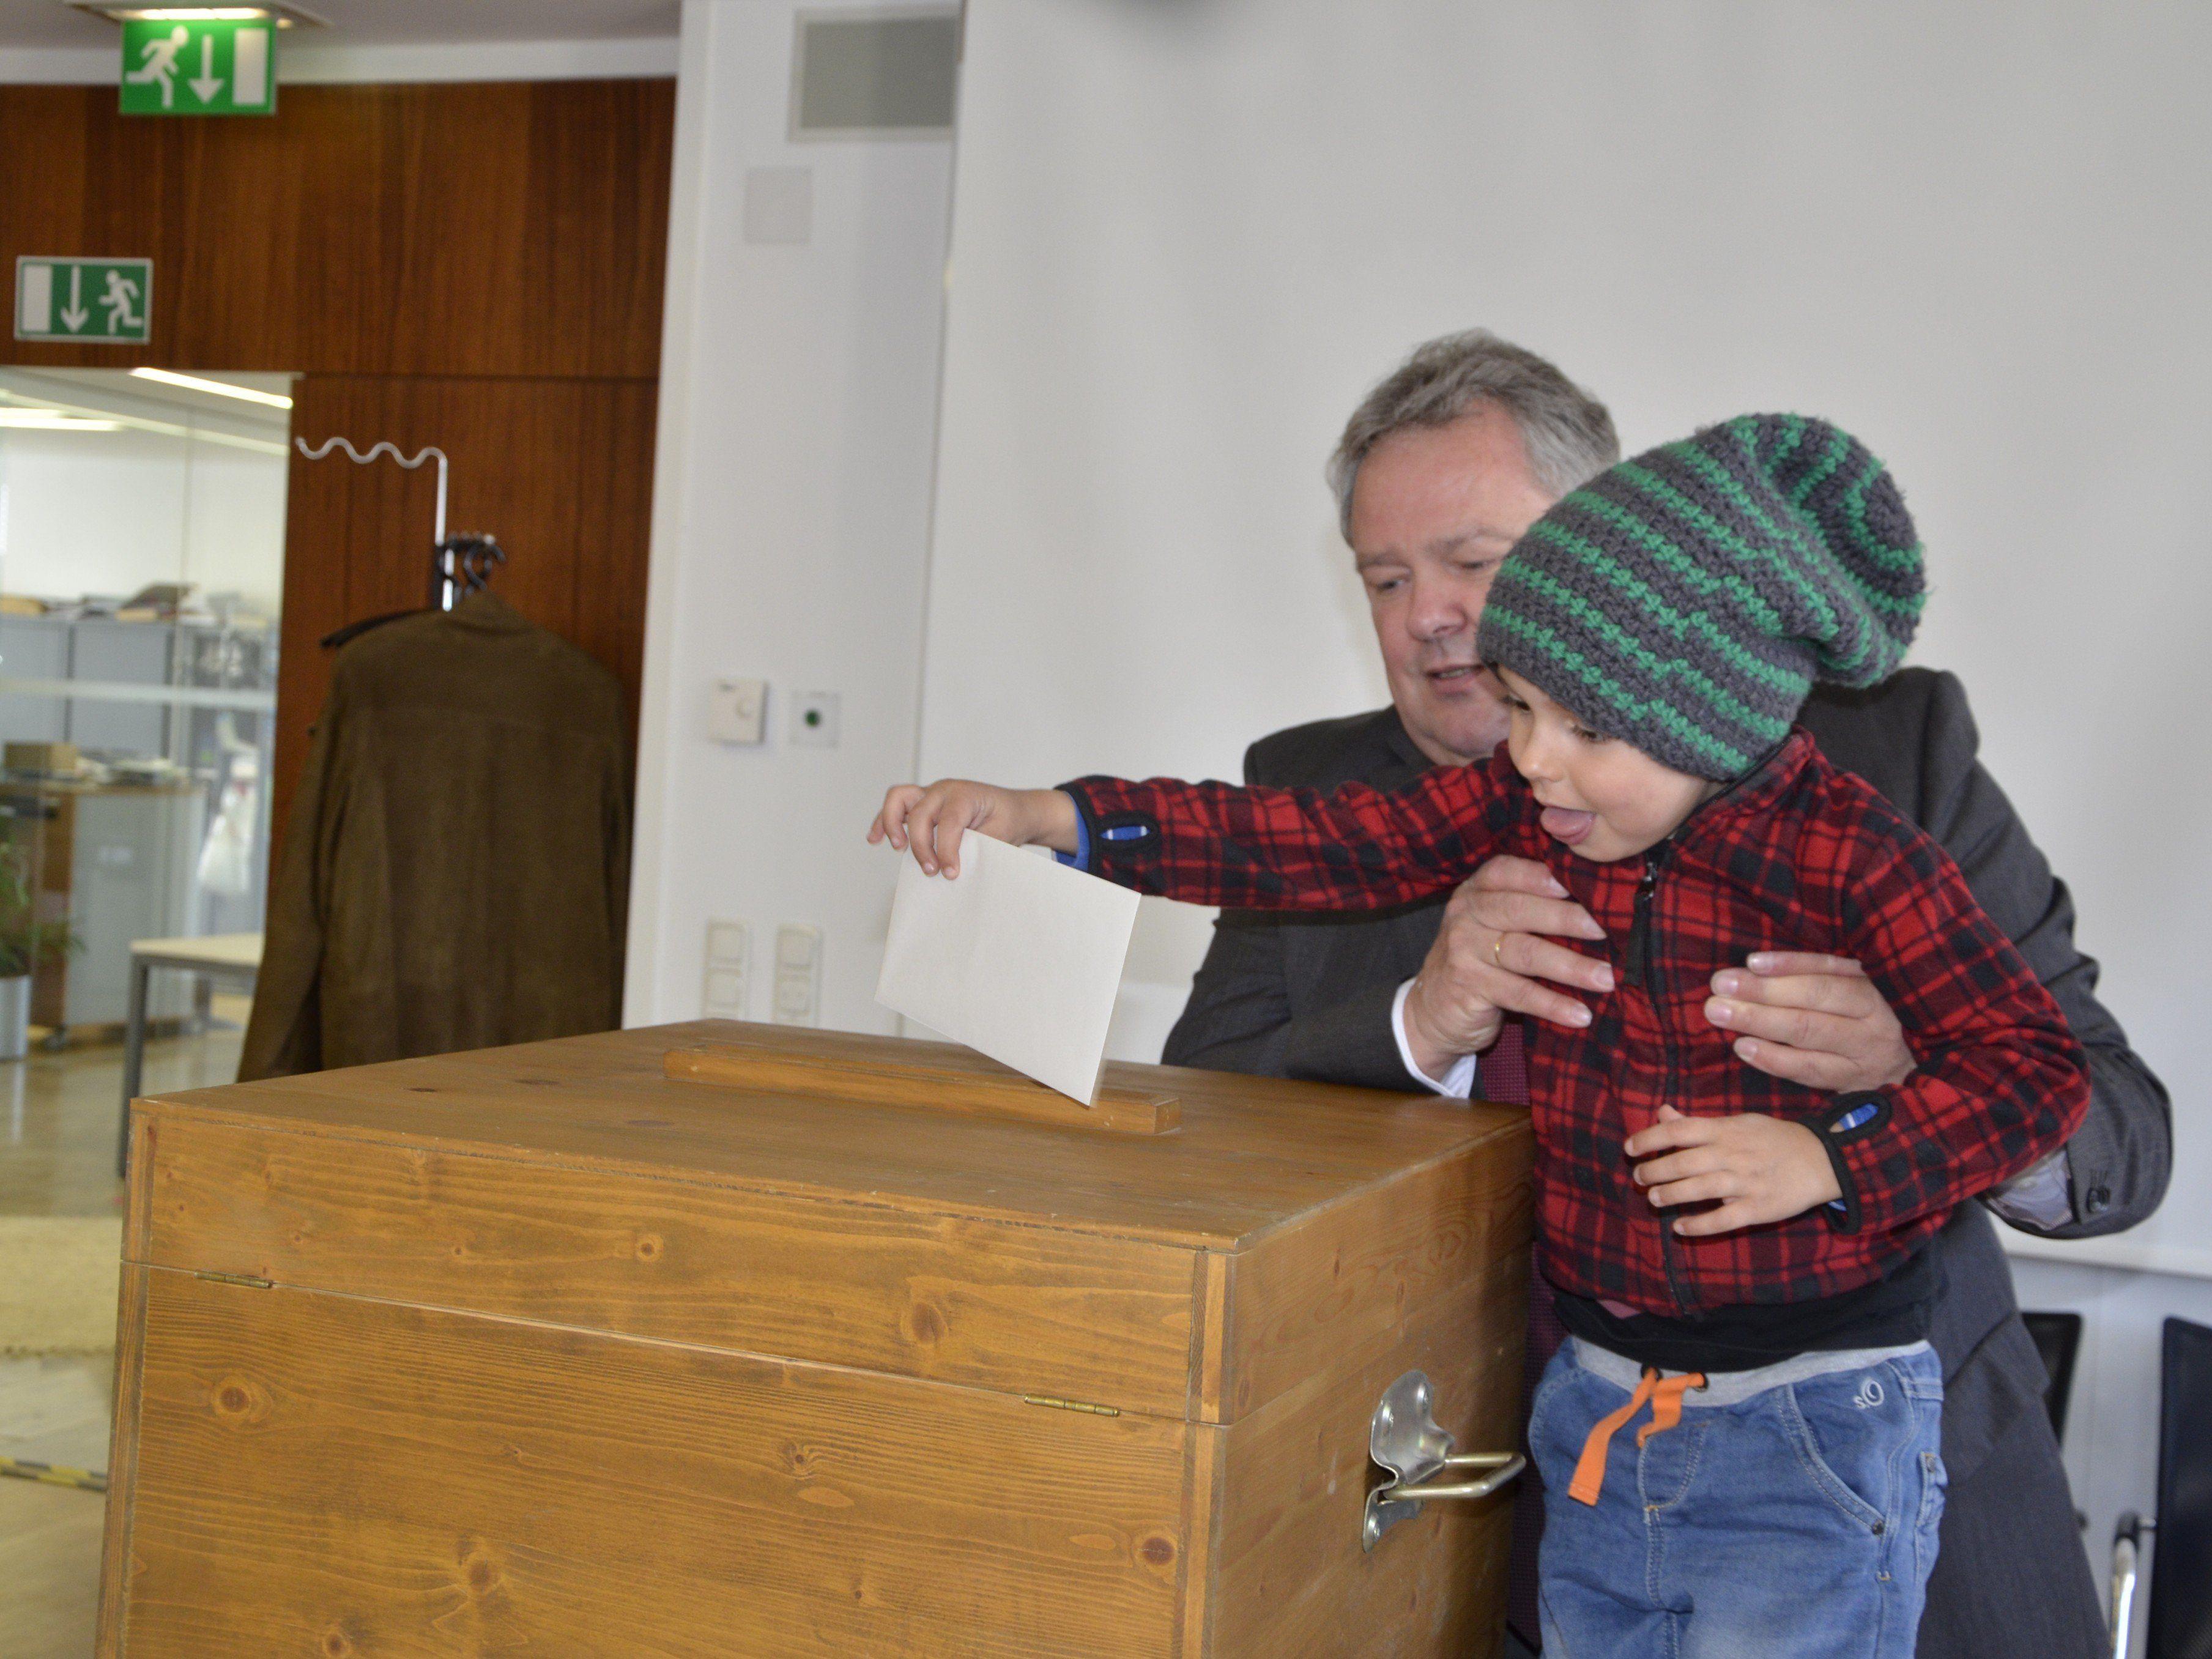 Bürgermeister Wutschitz hieft den Youngster zur Wahlurne!